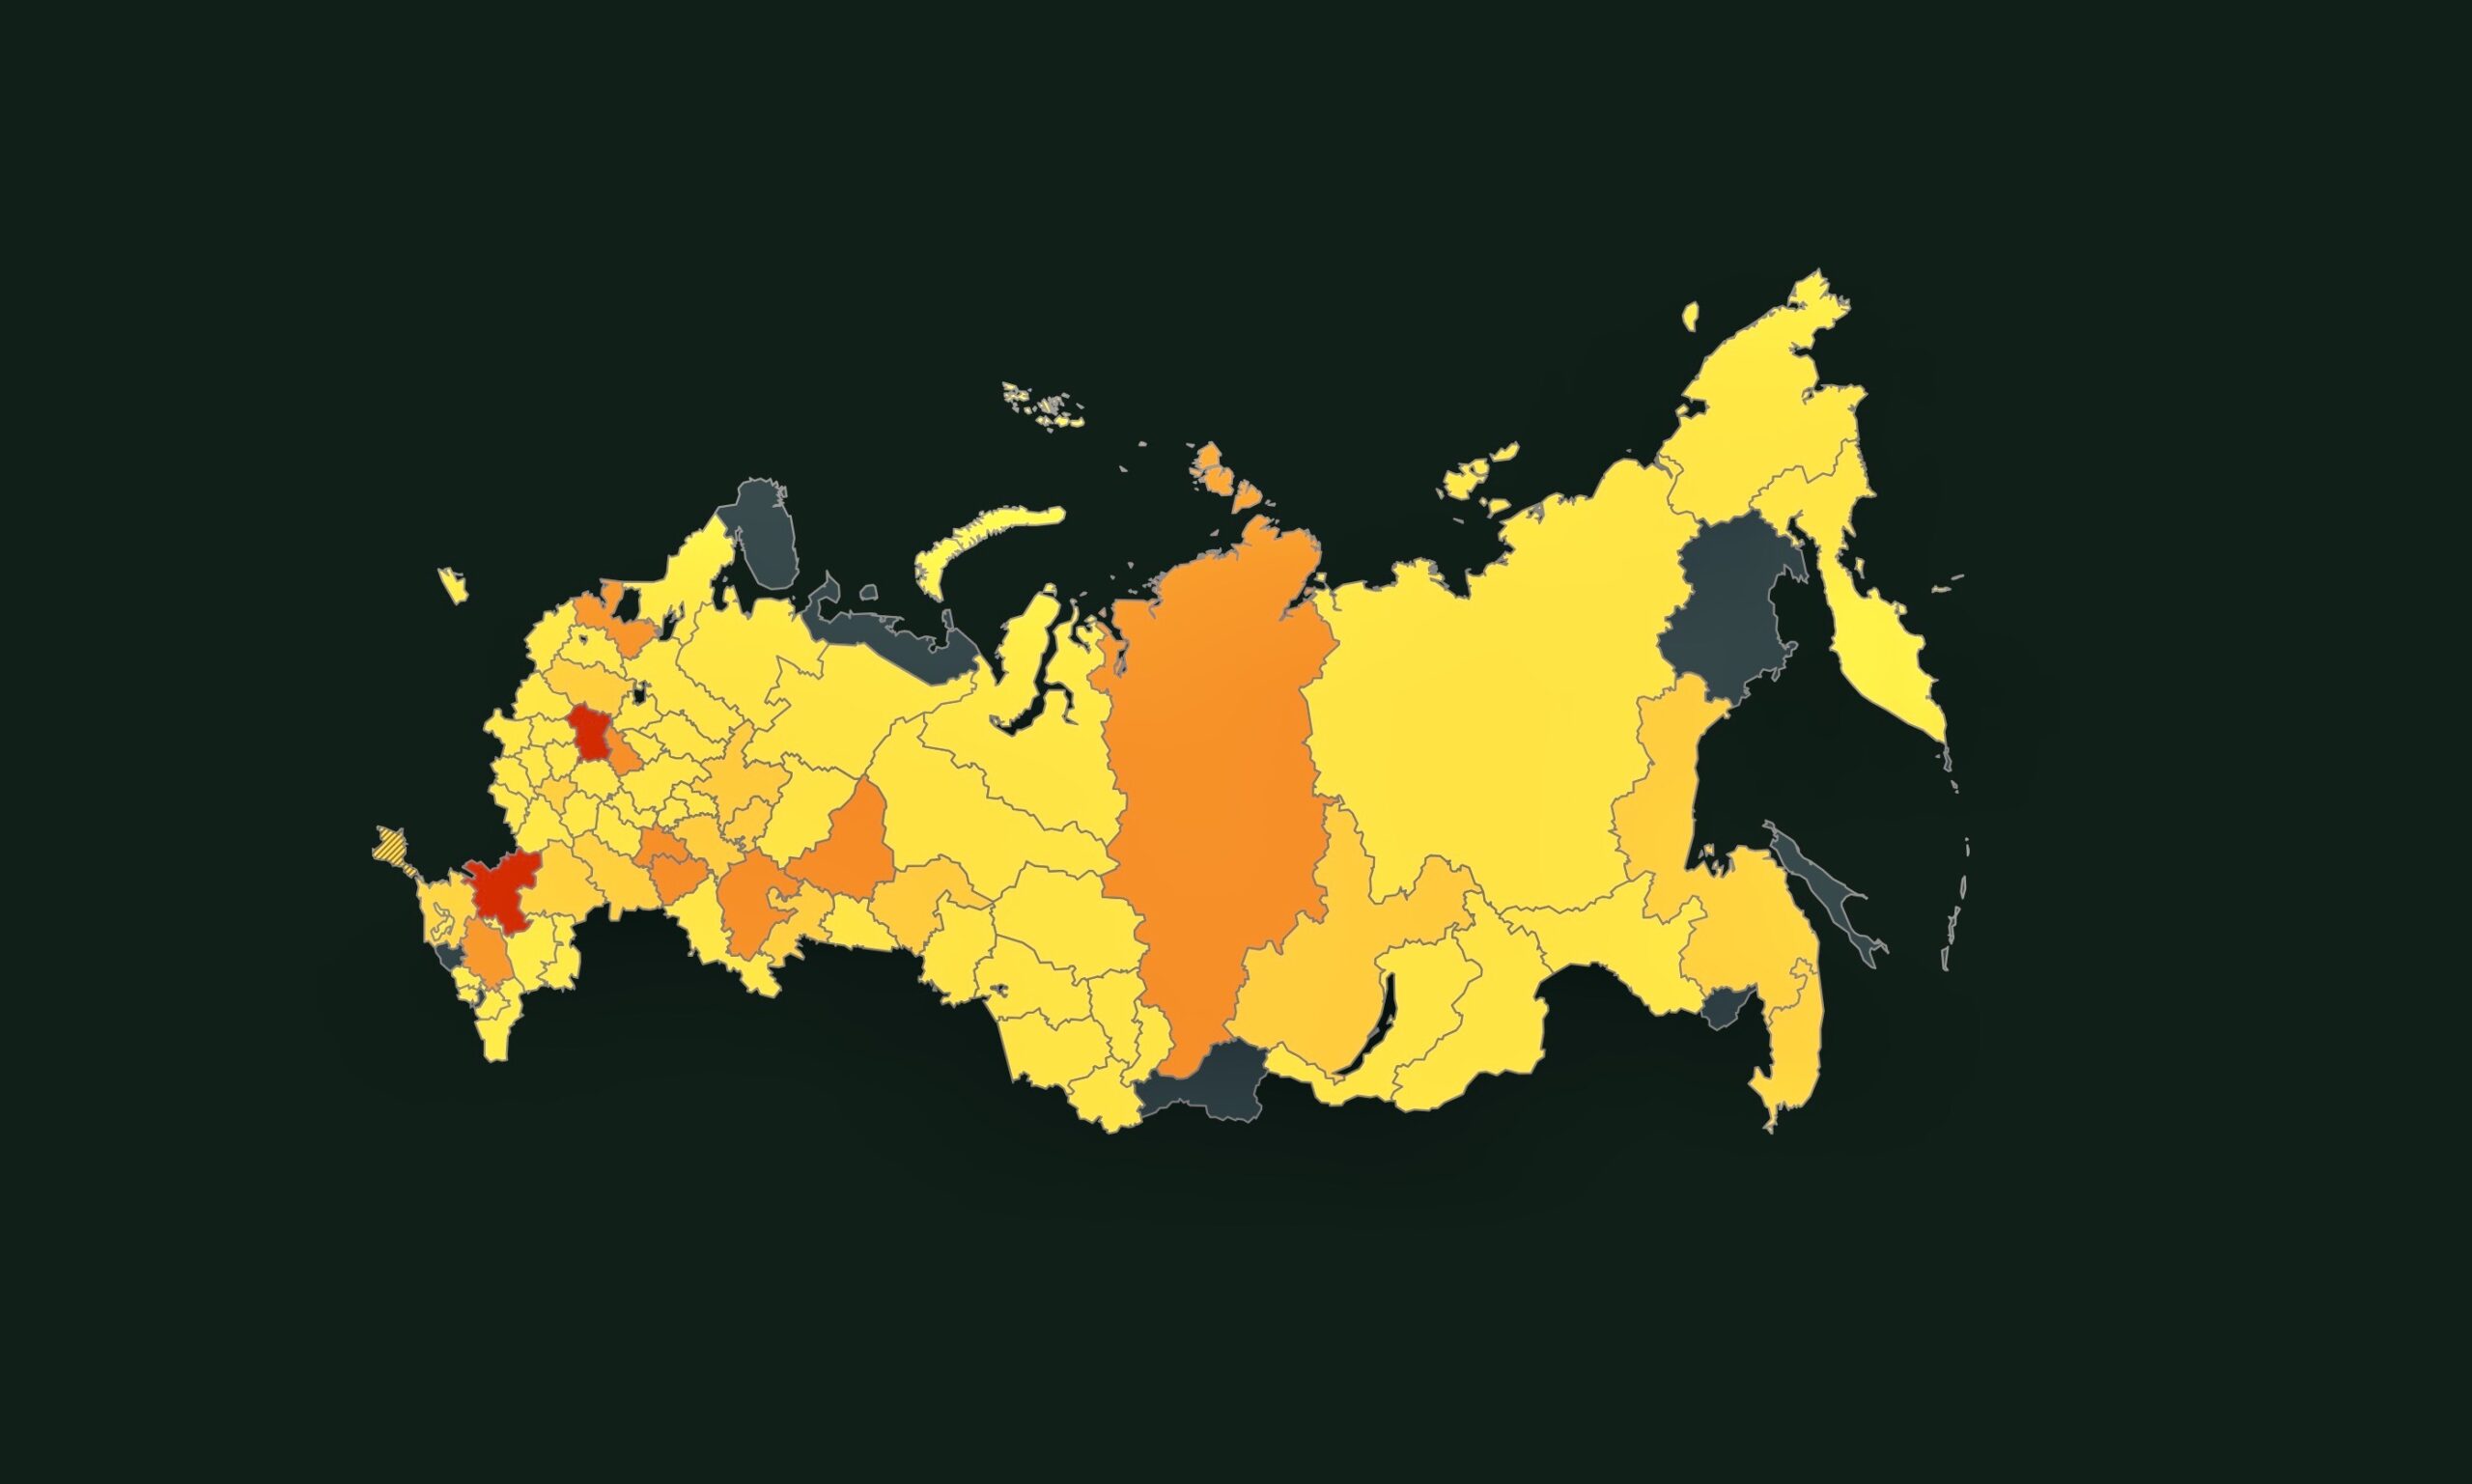 «Скат madia» и «Настоящее время» создали интерактивную карту «Архипелаг ФСИН». (© https://fsin.skat.media/)